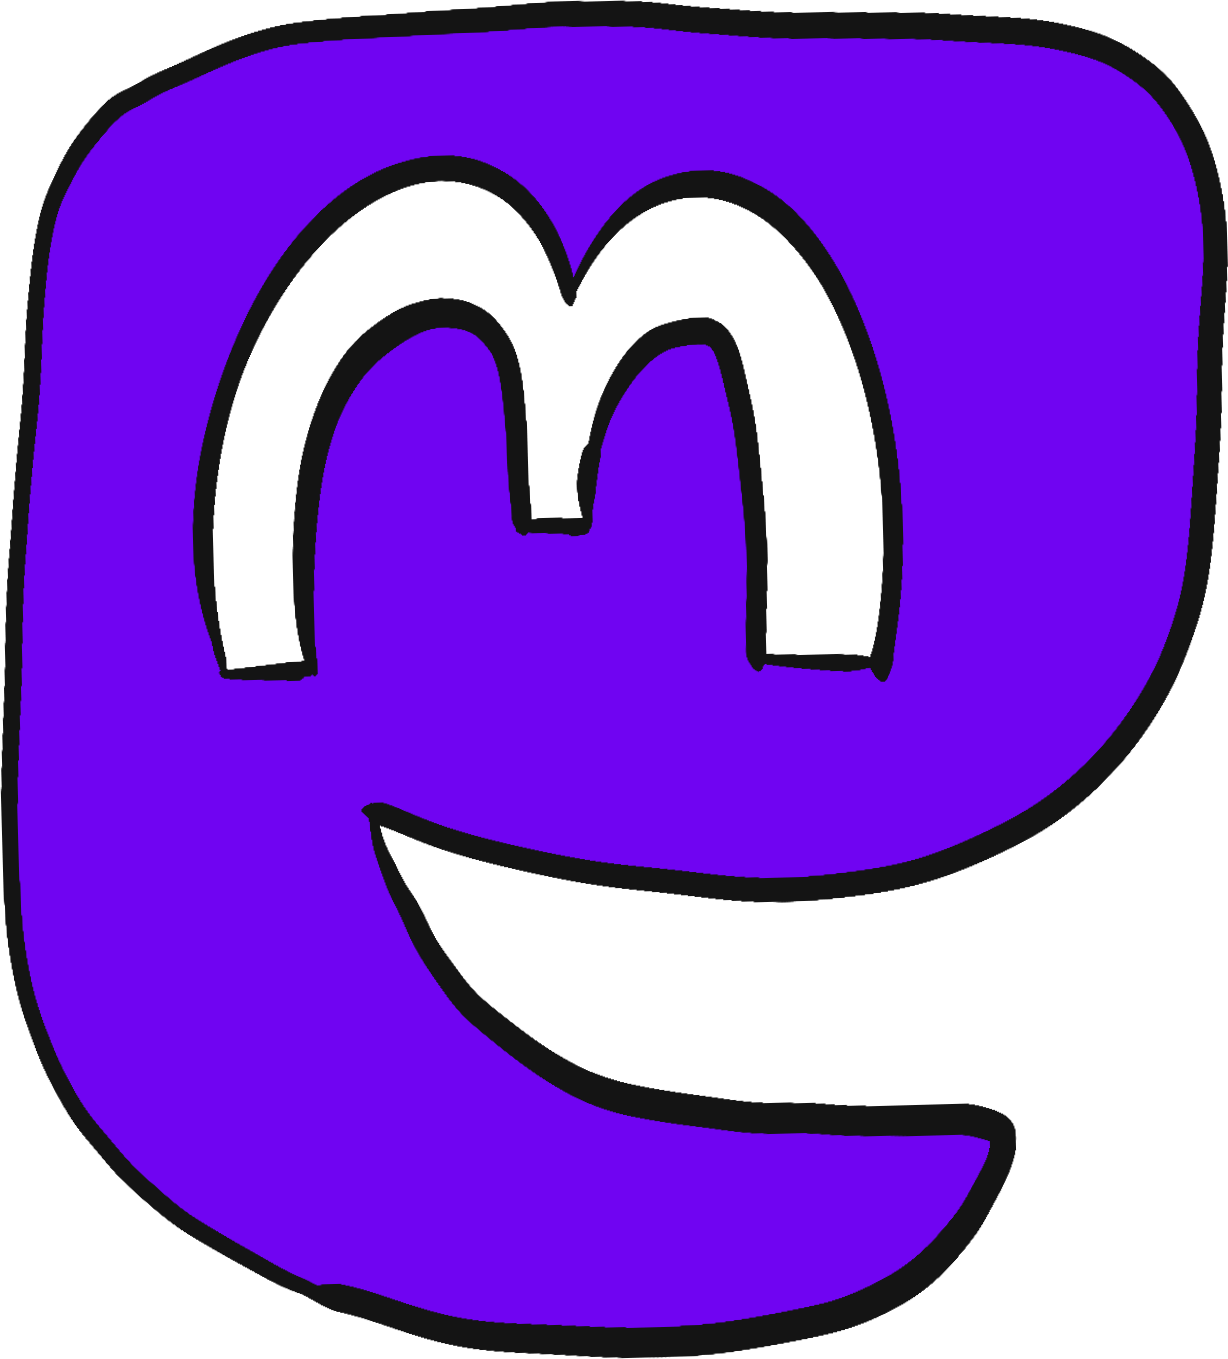 Hand-drawn icon of the Mastodon logo